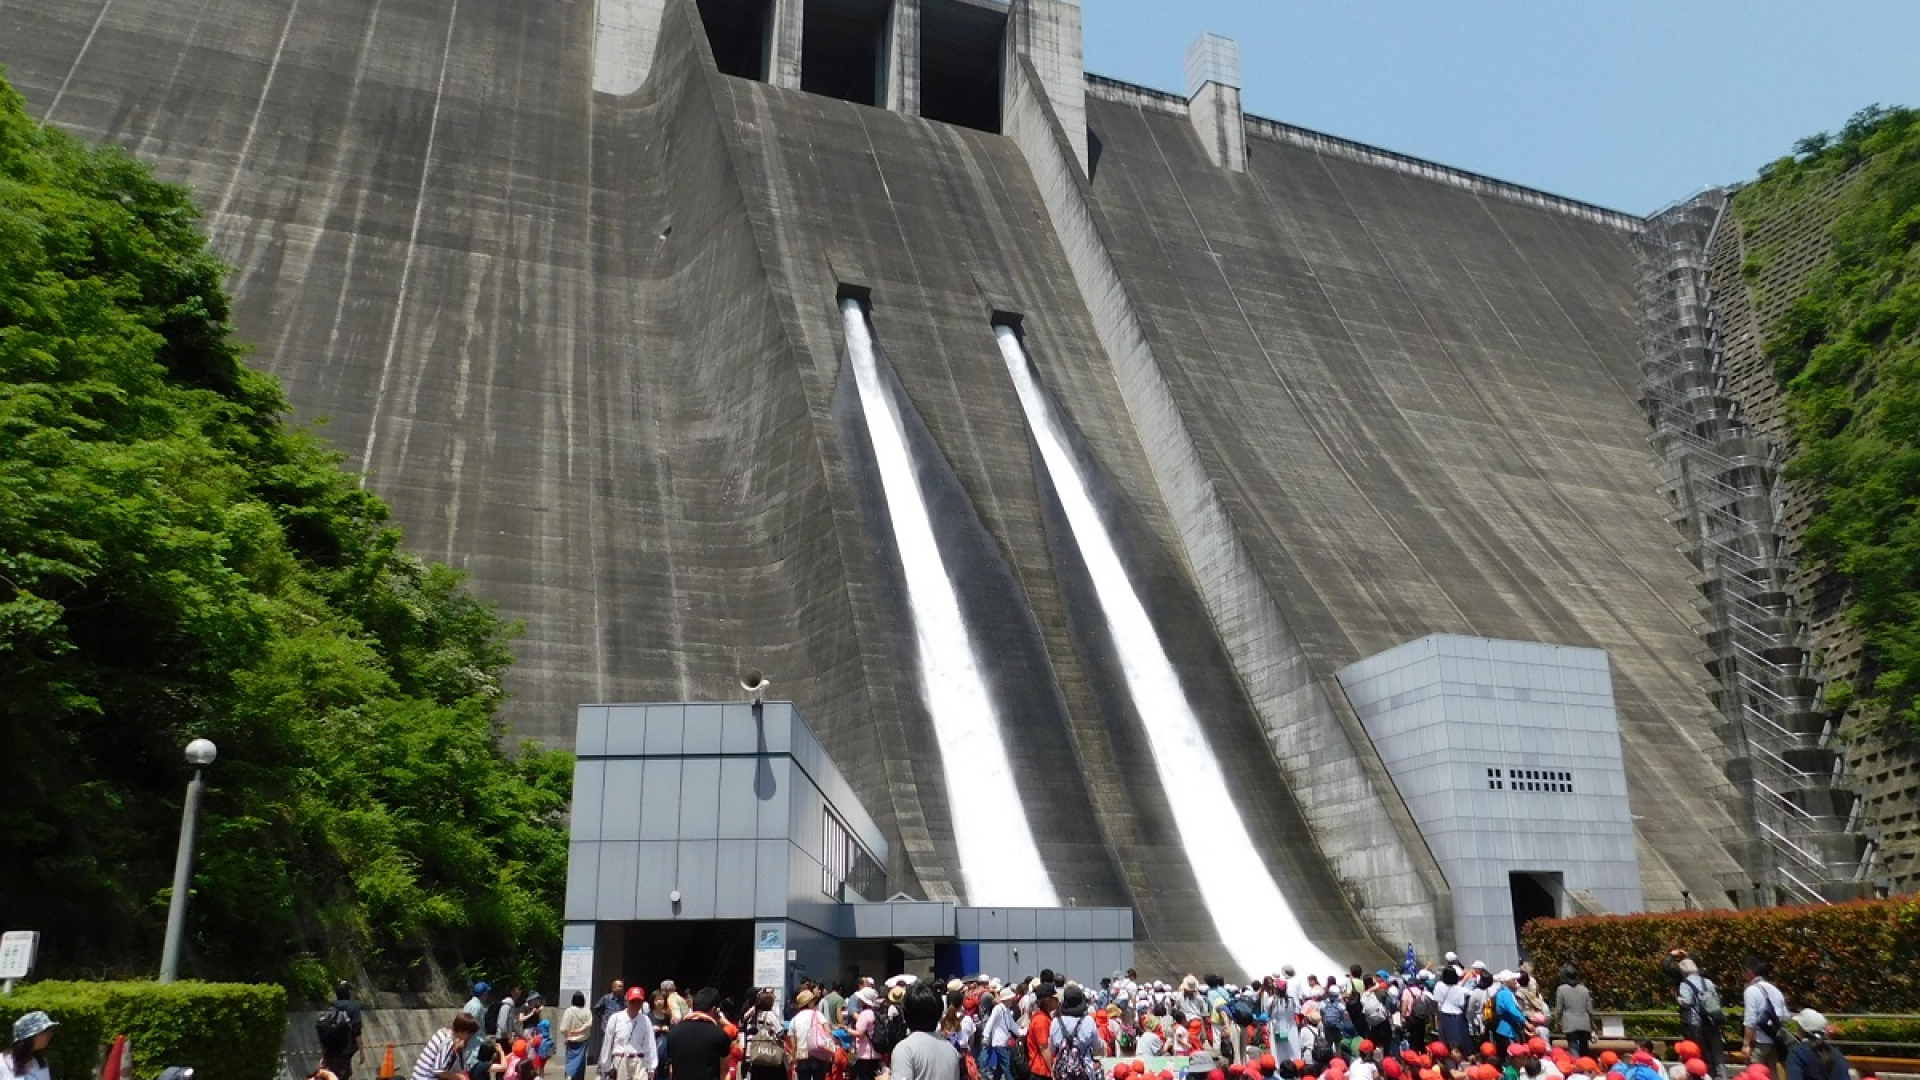 Visite du barrage de Miyagase (ouverture des vannes)